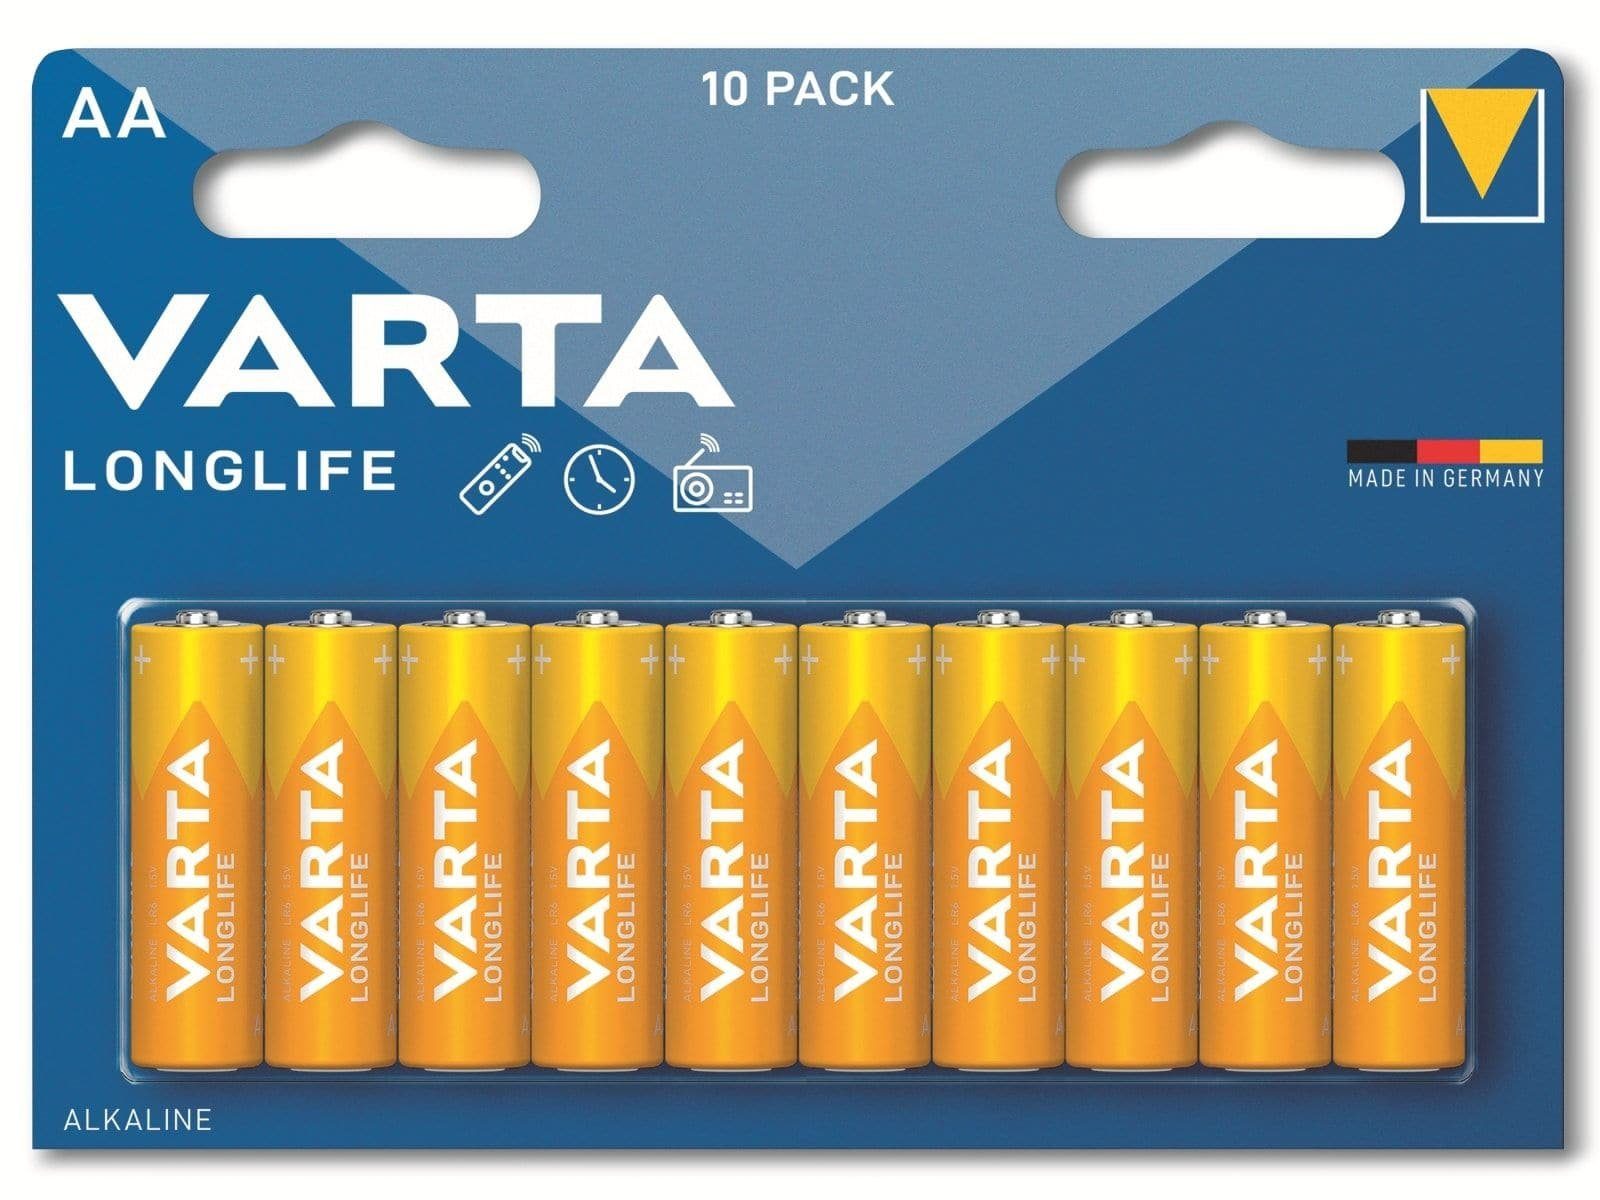 Batterie VARTA VARTA AA, 1.5V Alkaline, Batterie Mignon, LR06,